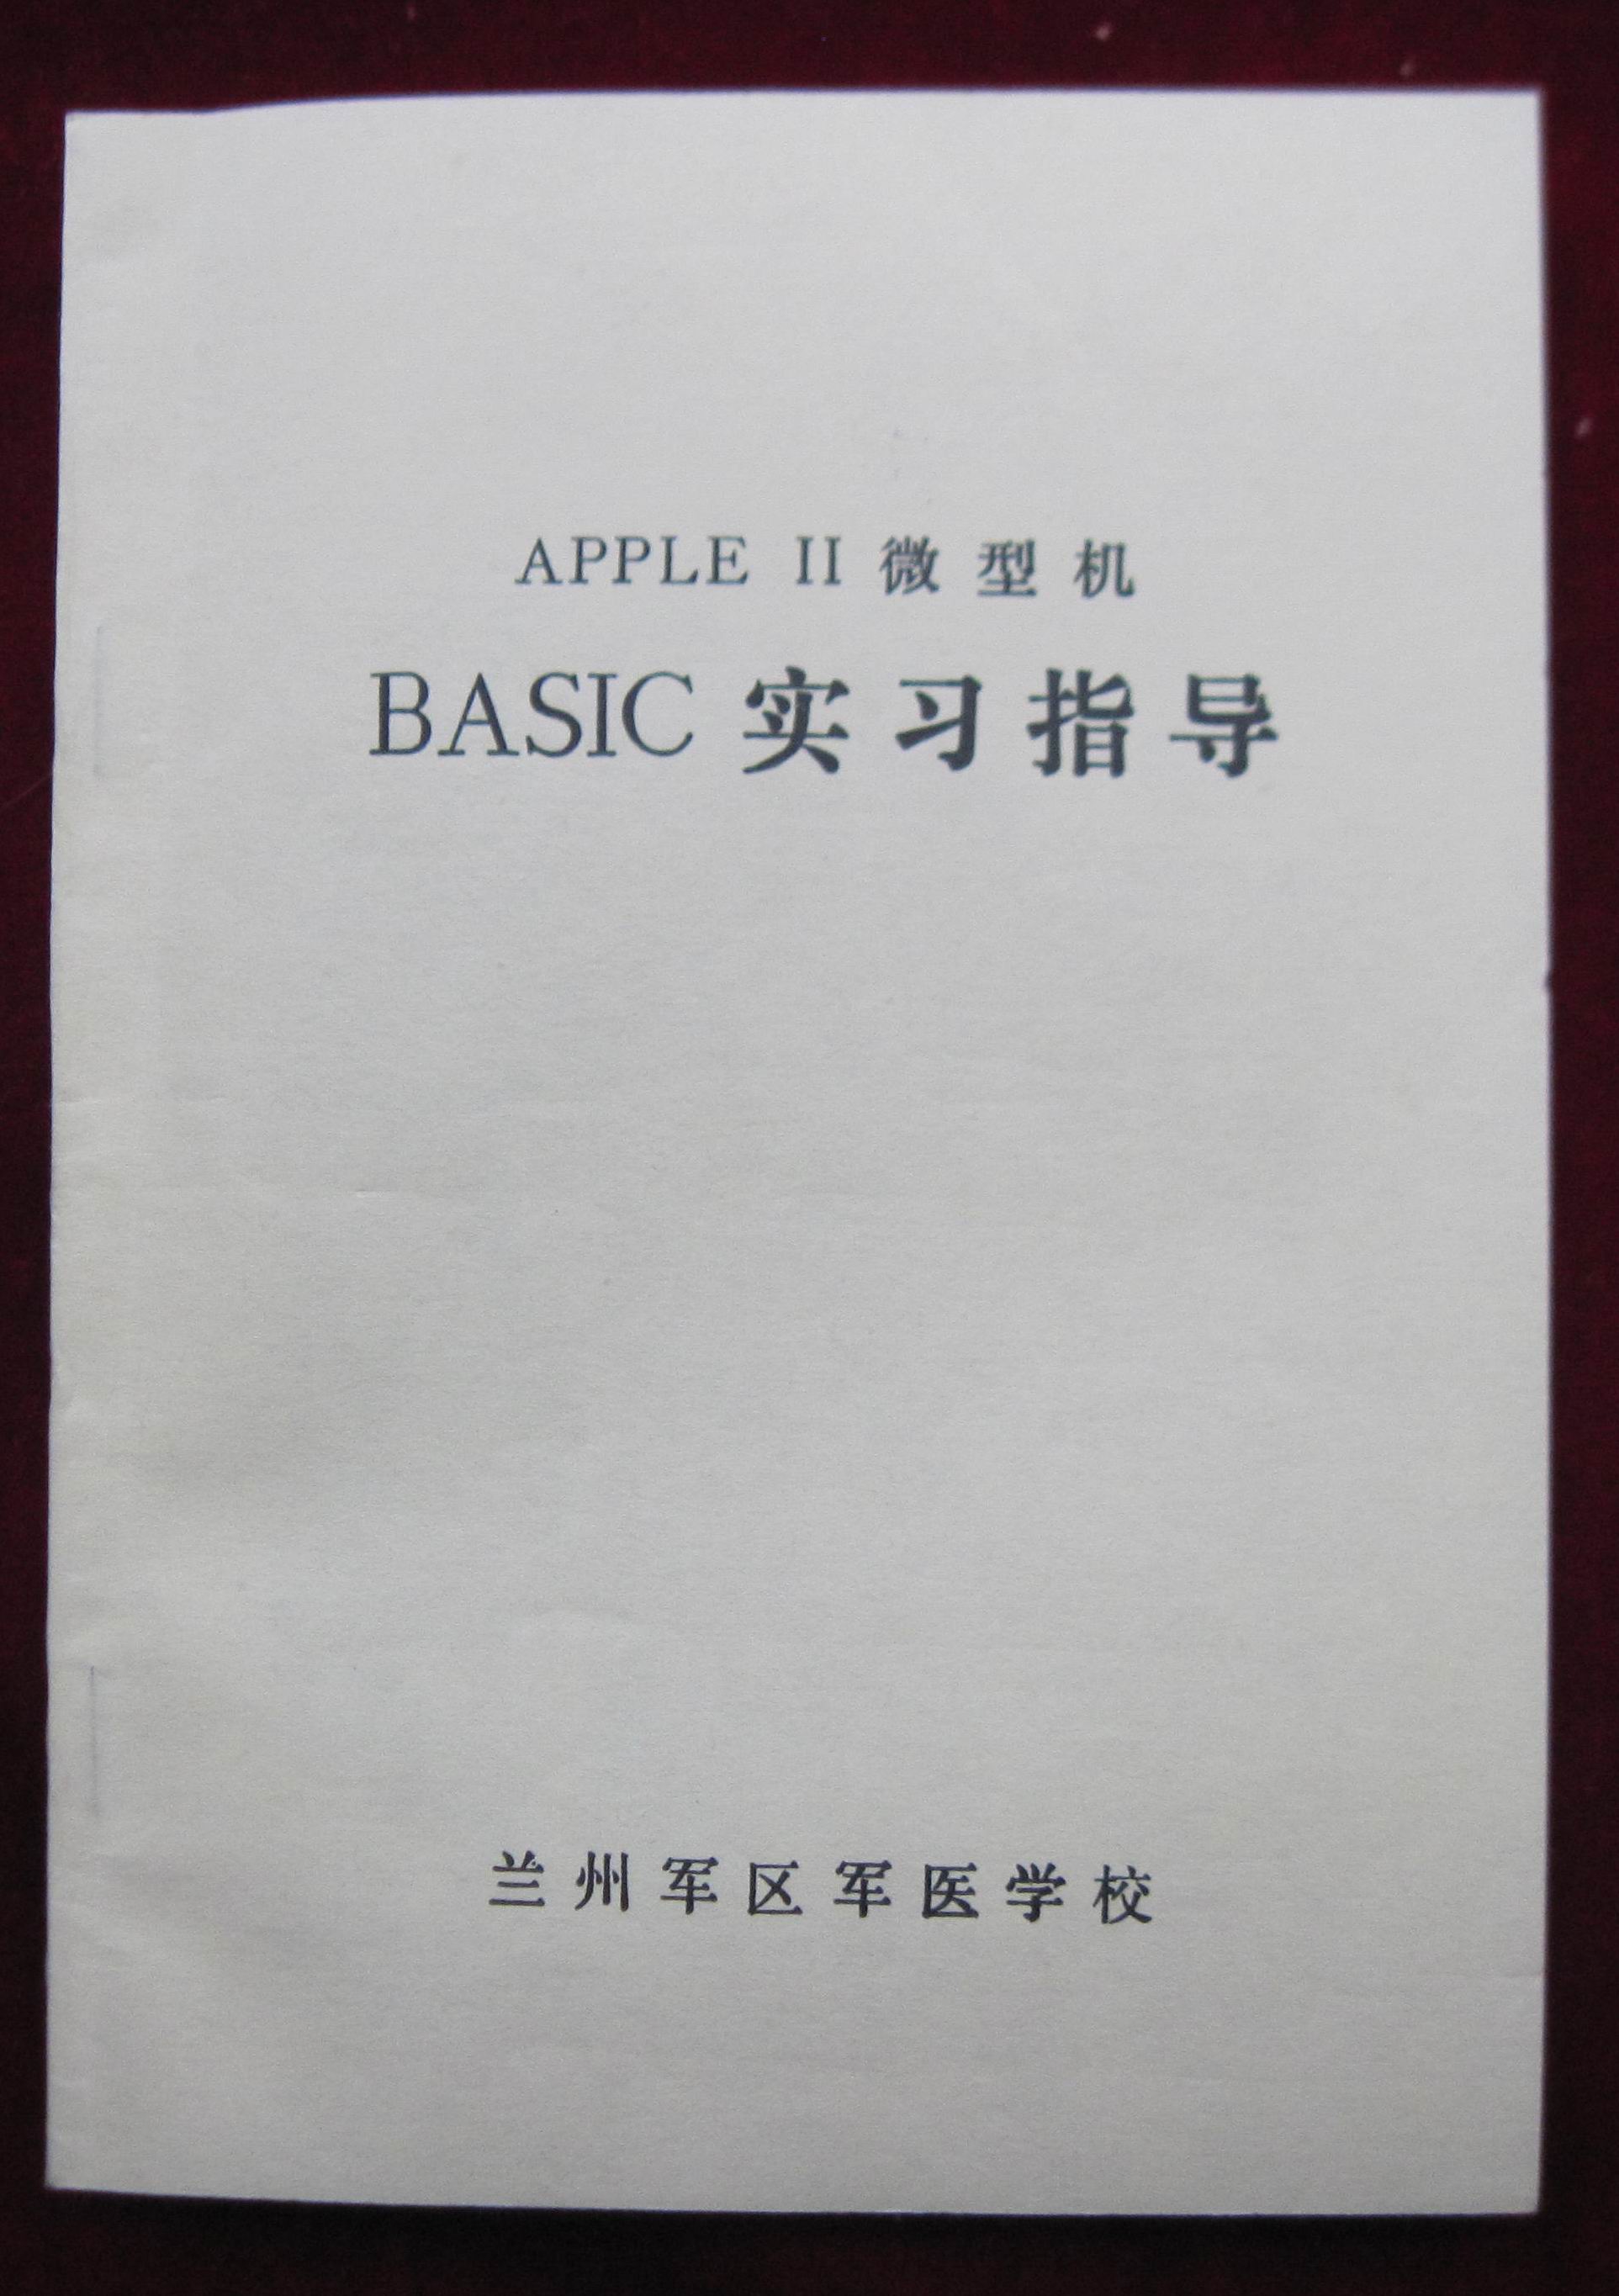 侯豐勝等編寫的APPLEⅡ微型機BASIC實習指導